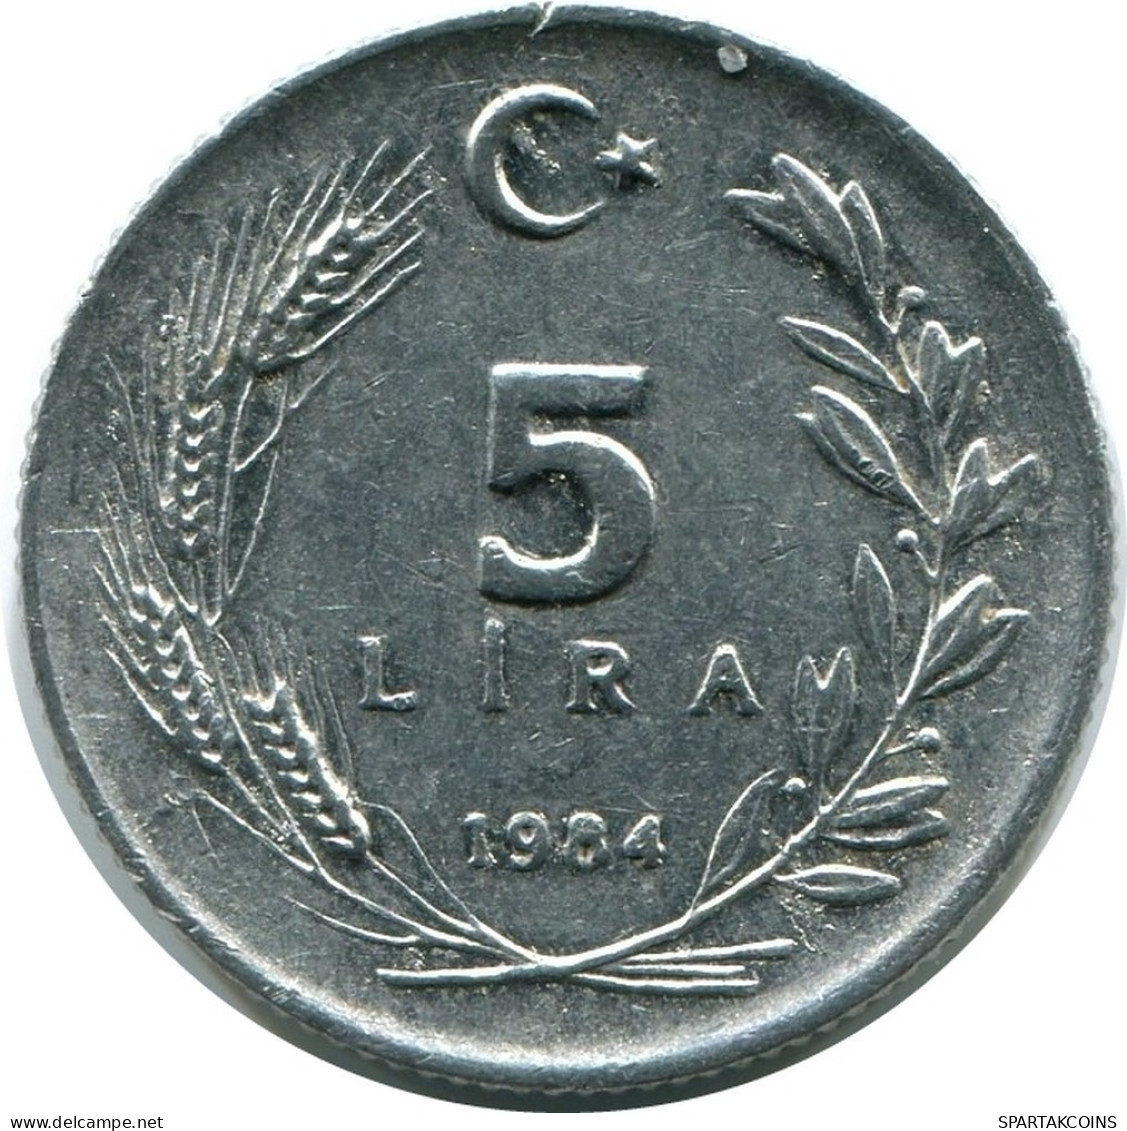 5 LIRA 1984 TÜRKEI TURKEY UNC Münze #M10289.D.A - Turkey